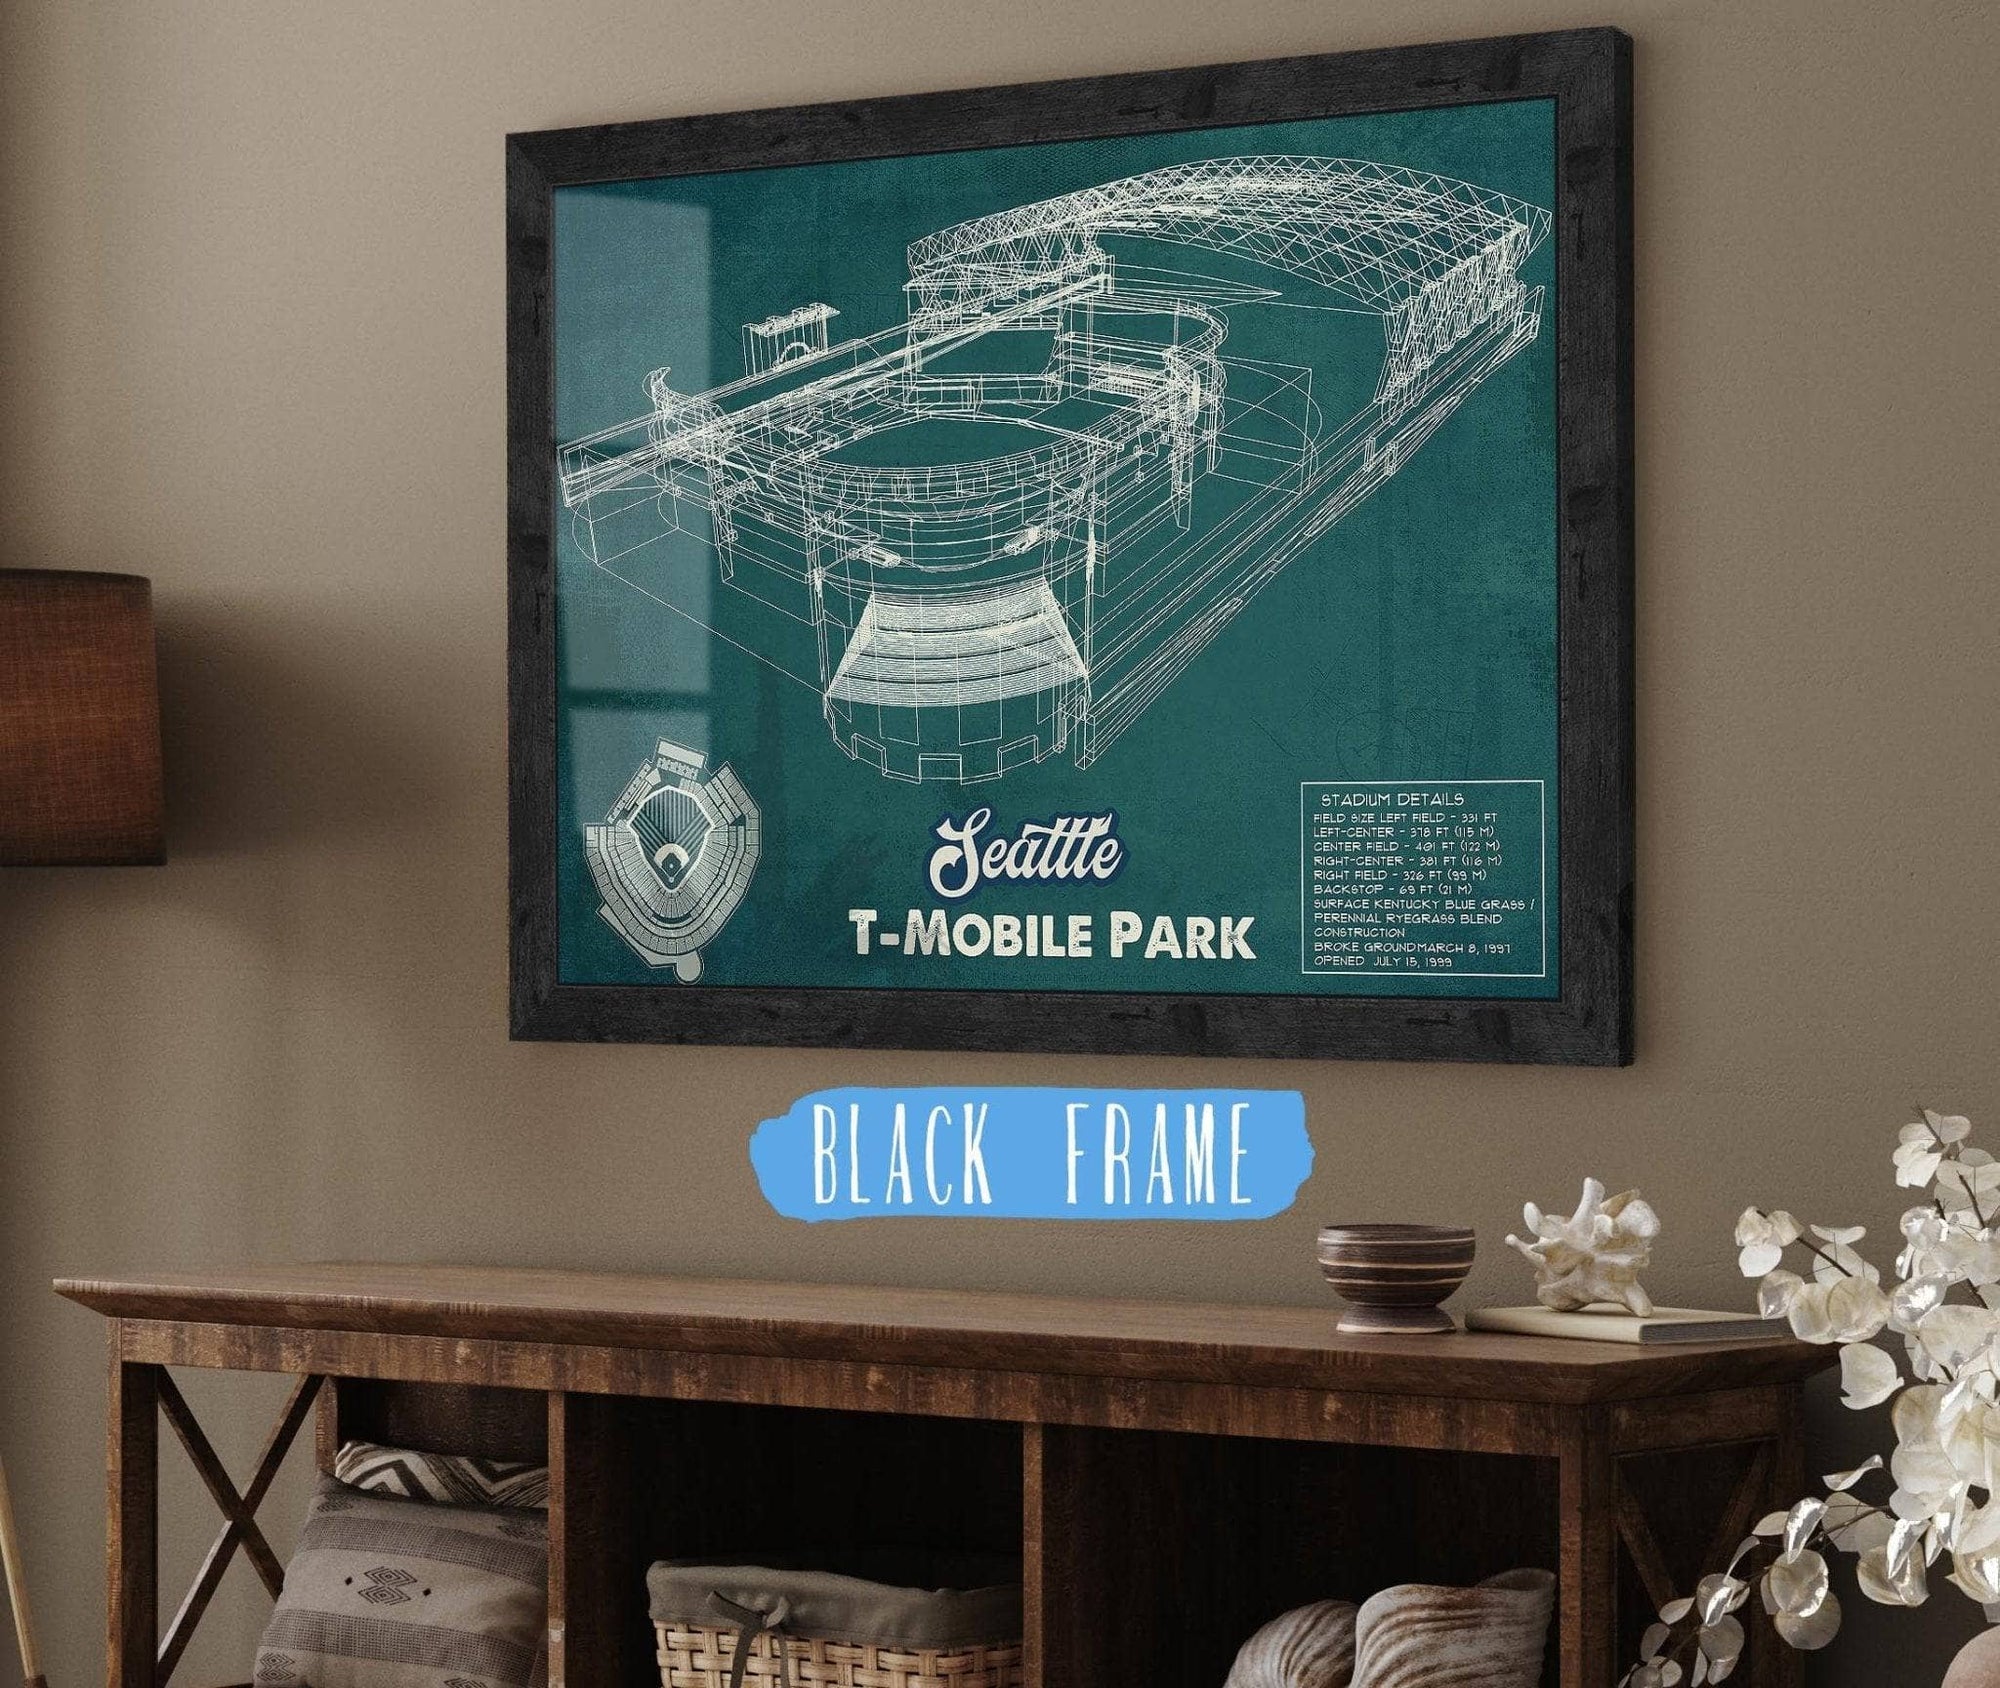 Cutler West Baseball Collection 14" x 11" / Black Frame Seattle Mariners T- Mobile Park Vintage Baseball Frame Print 2019 692366049_23873